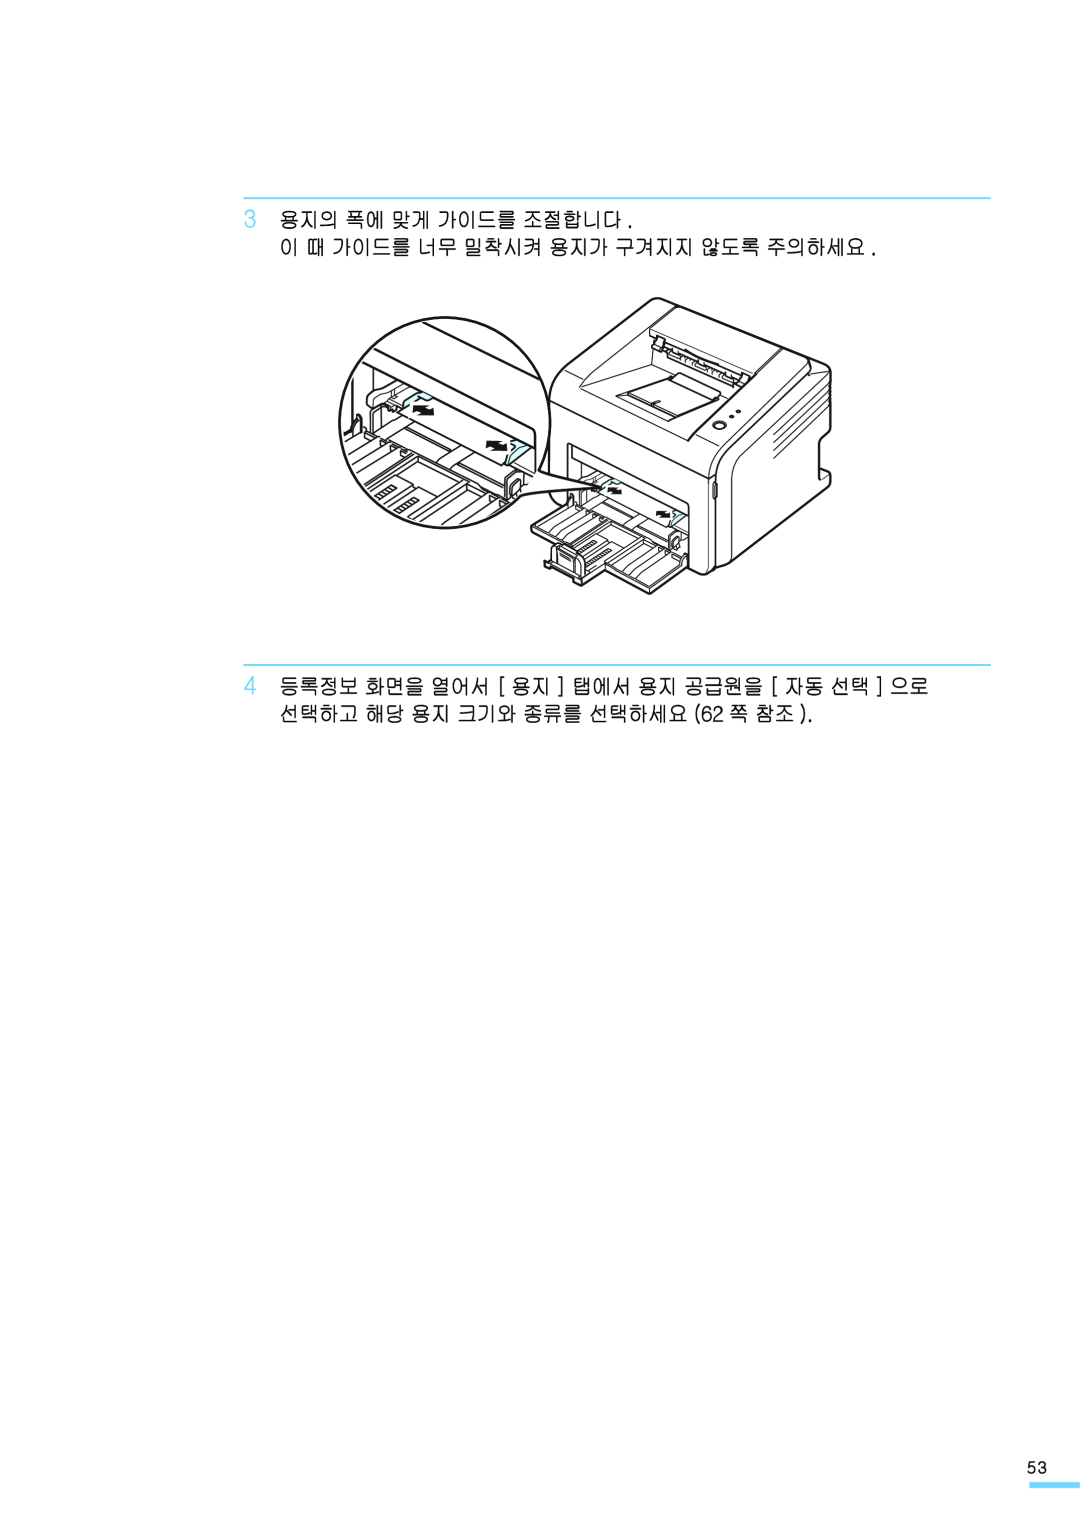 Samsung ML-2571N manual 3 용지의 폭에 맞게 가이드를 조절합니다 이 때 가이드를 너무 밀착시켜 용지가 구겨지지 않도록 주의하세요 